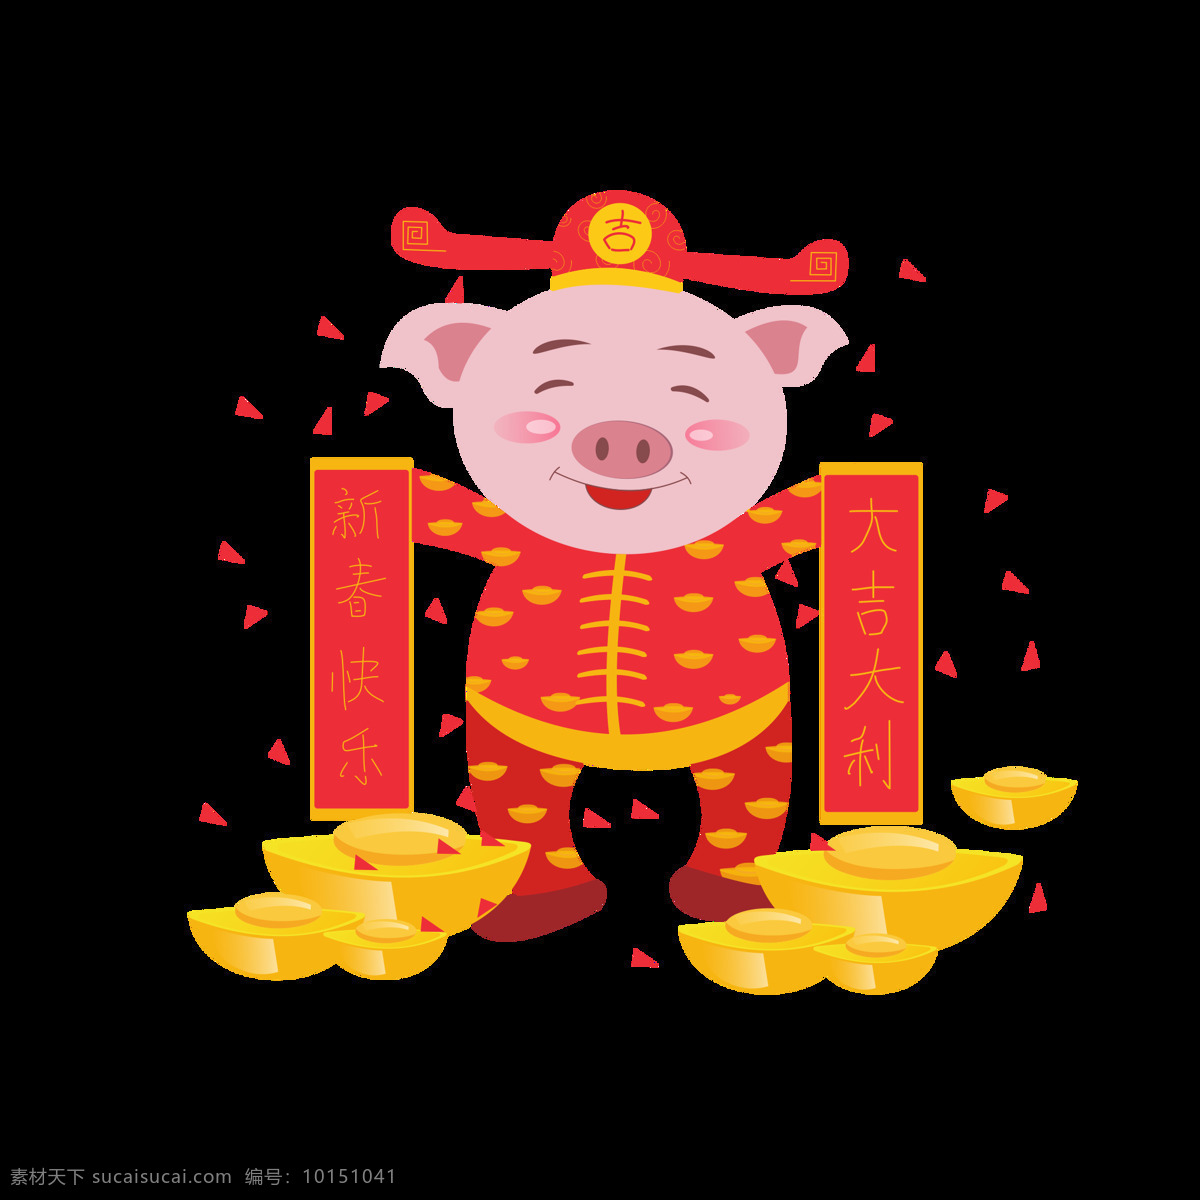 猪年 元素 卡通 可爱 喜庆 猪 形象 卡通可爱 新春快乐 元宝 2019猪年 元素设计 大吉大利